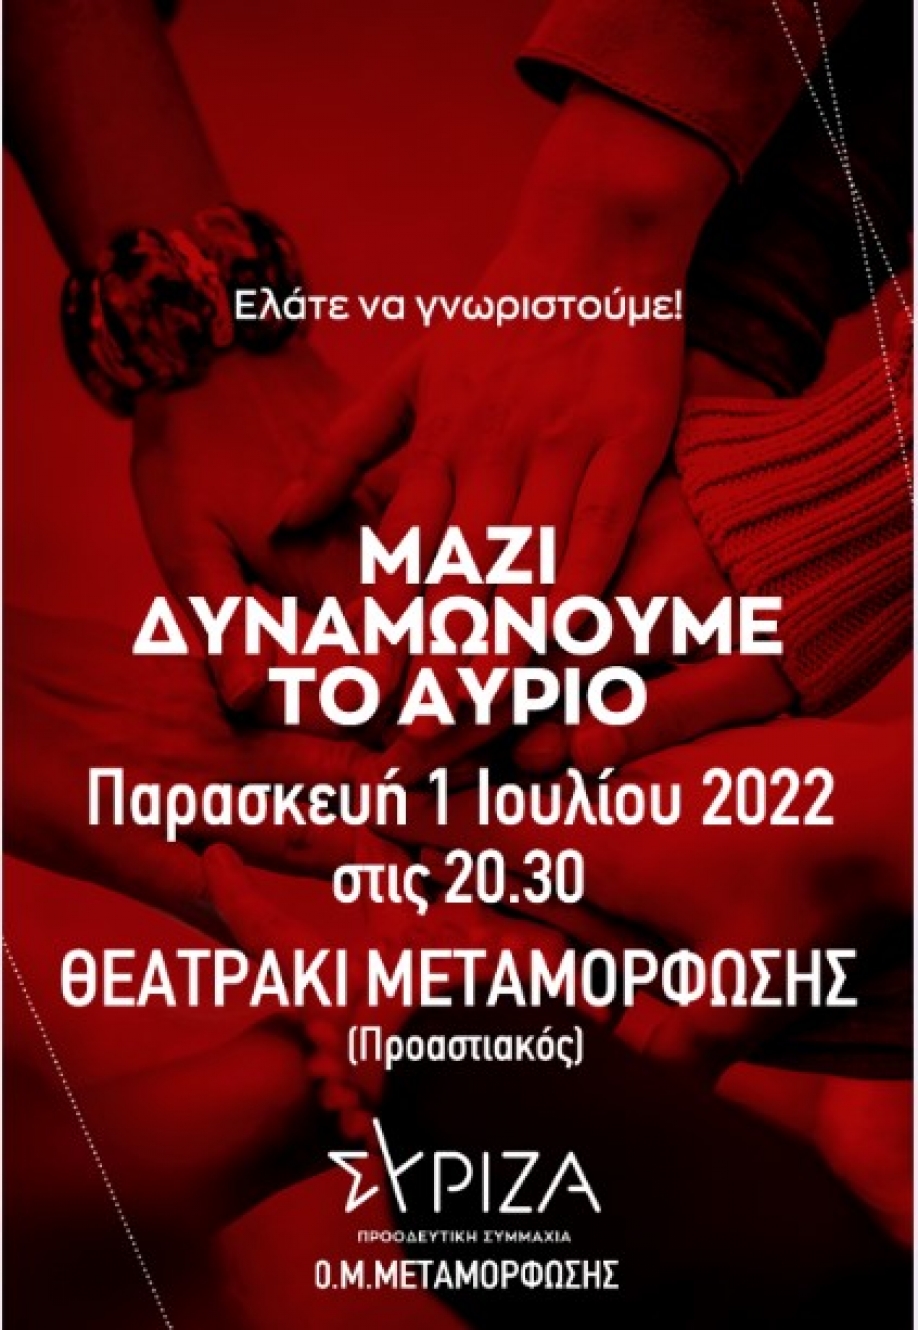 Εκδήλωση υποδοχής των νέων της μελών από την Ο.Μ. ΣΥΡΙΖΑ - ΠΣ Μεταμόρφωσης